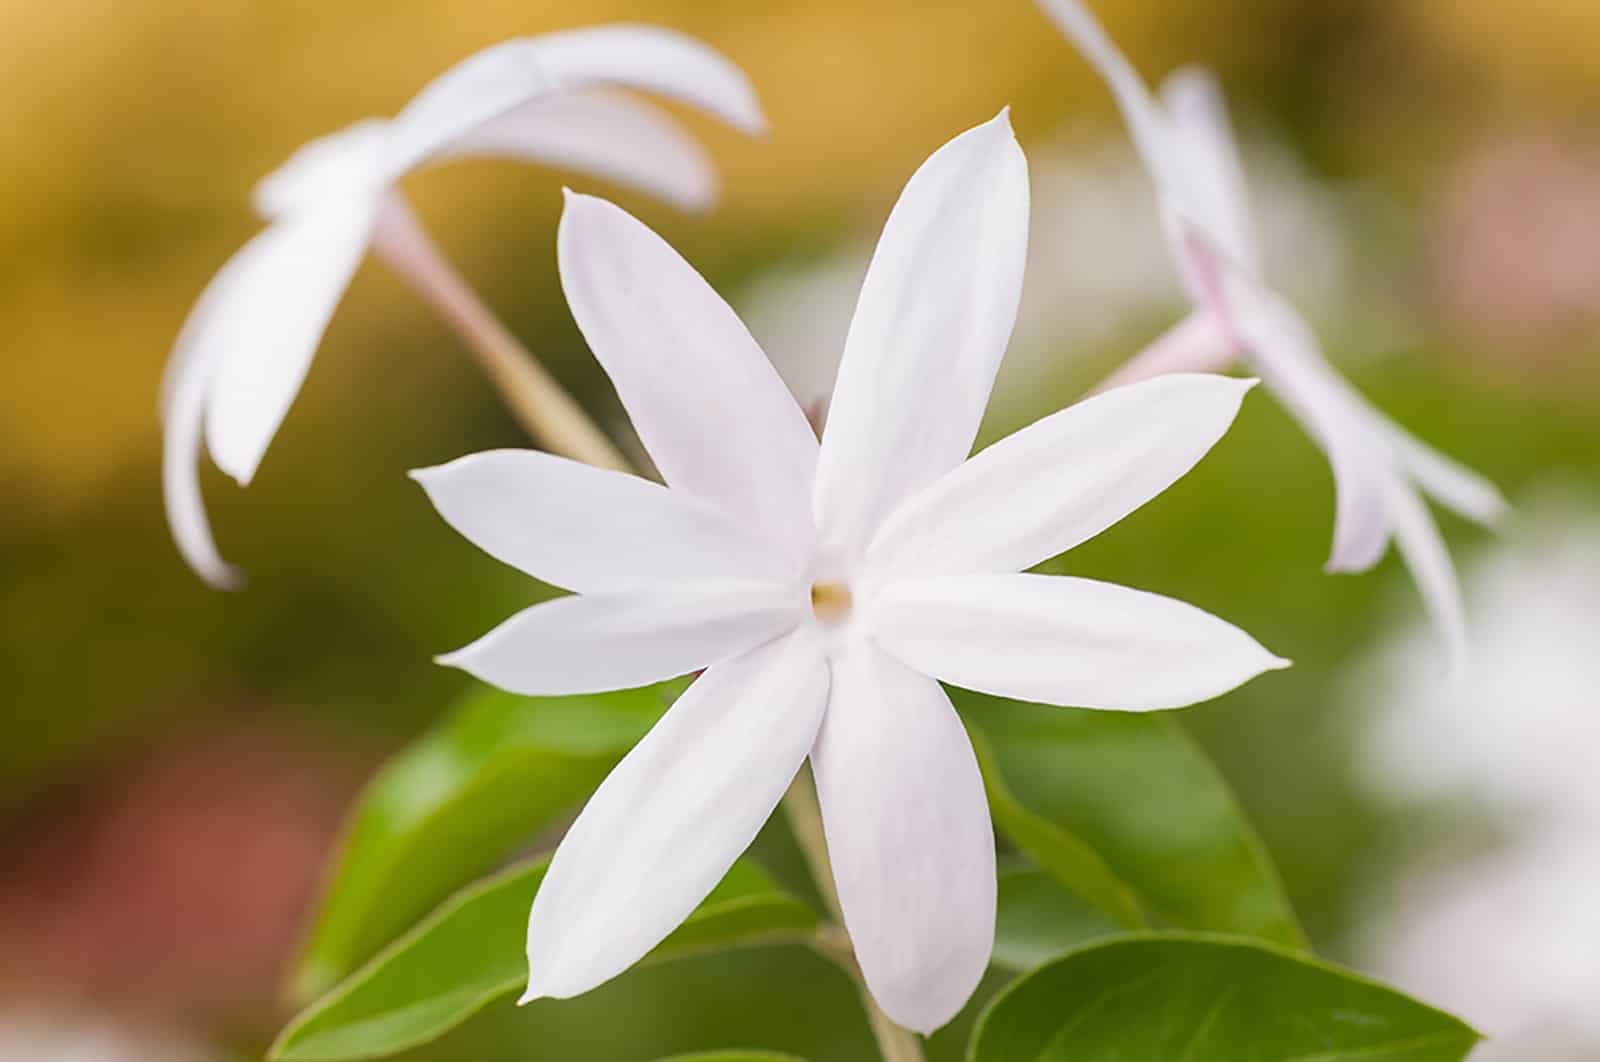 star jasmine white flower